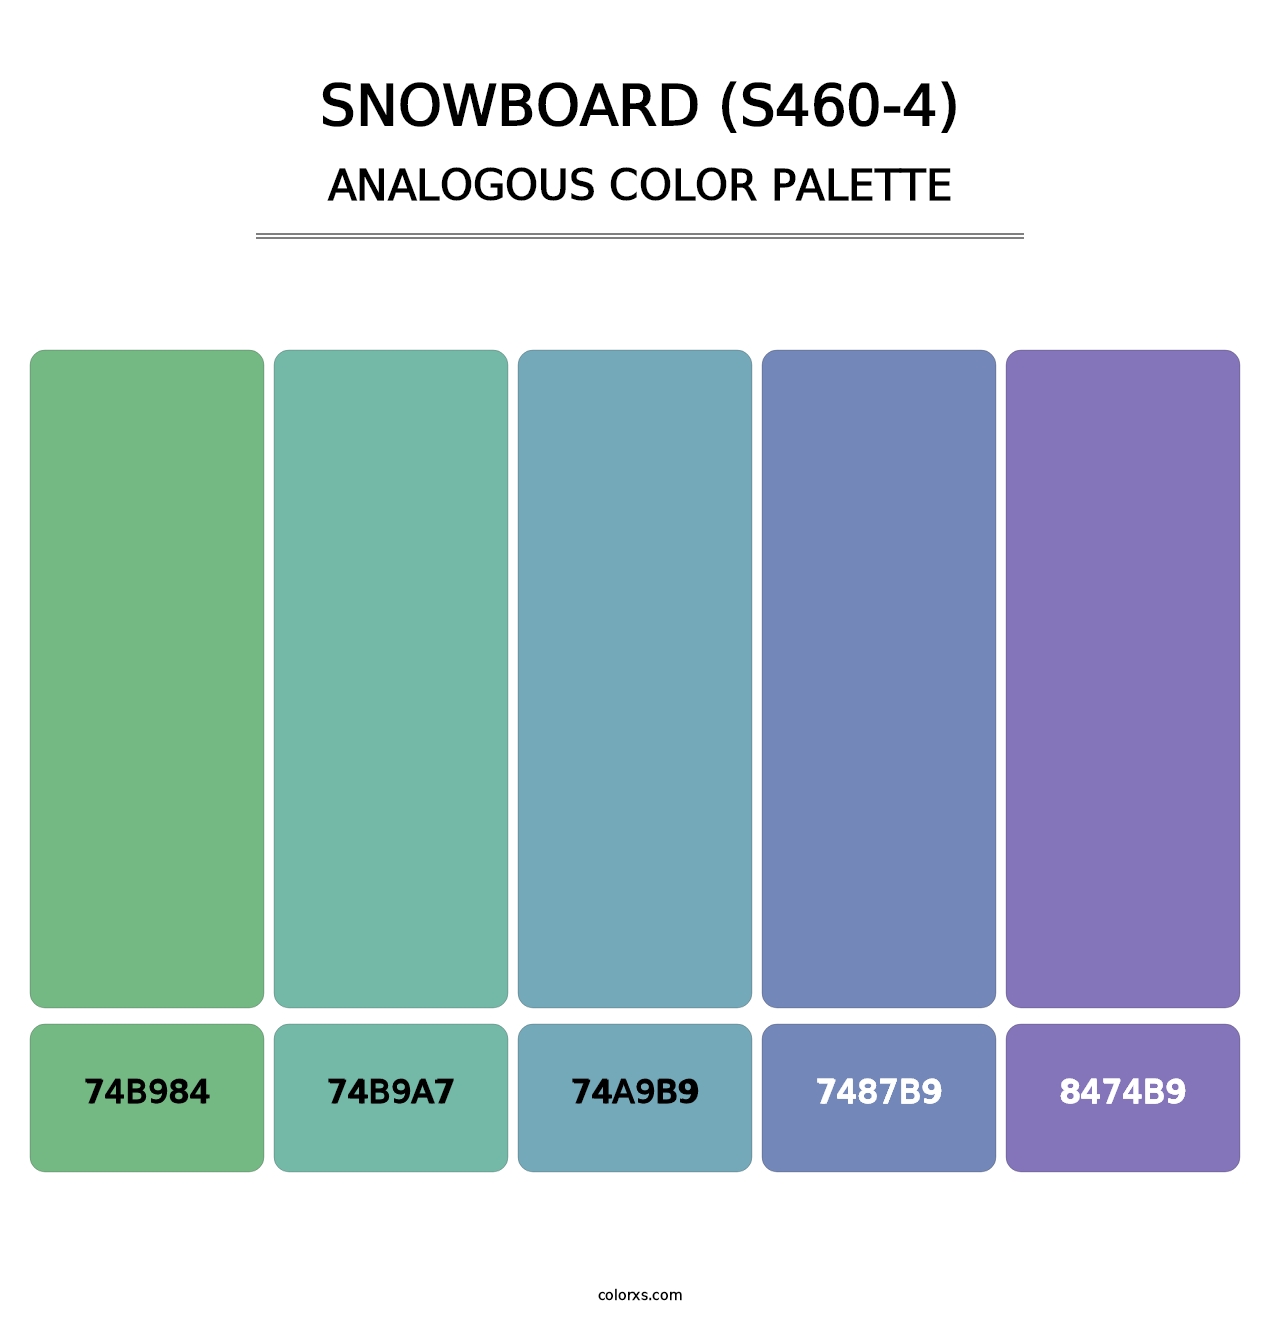 Snowboard (S460-4) - Analogous Color Palette